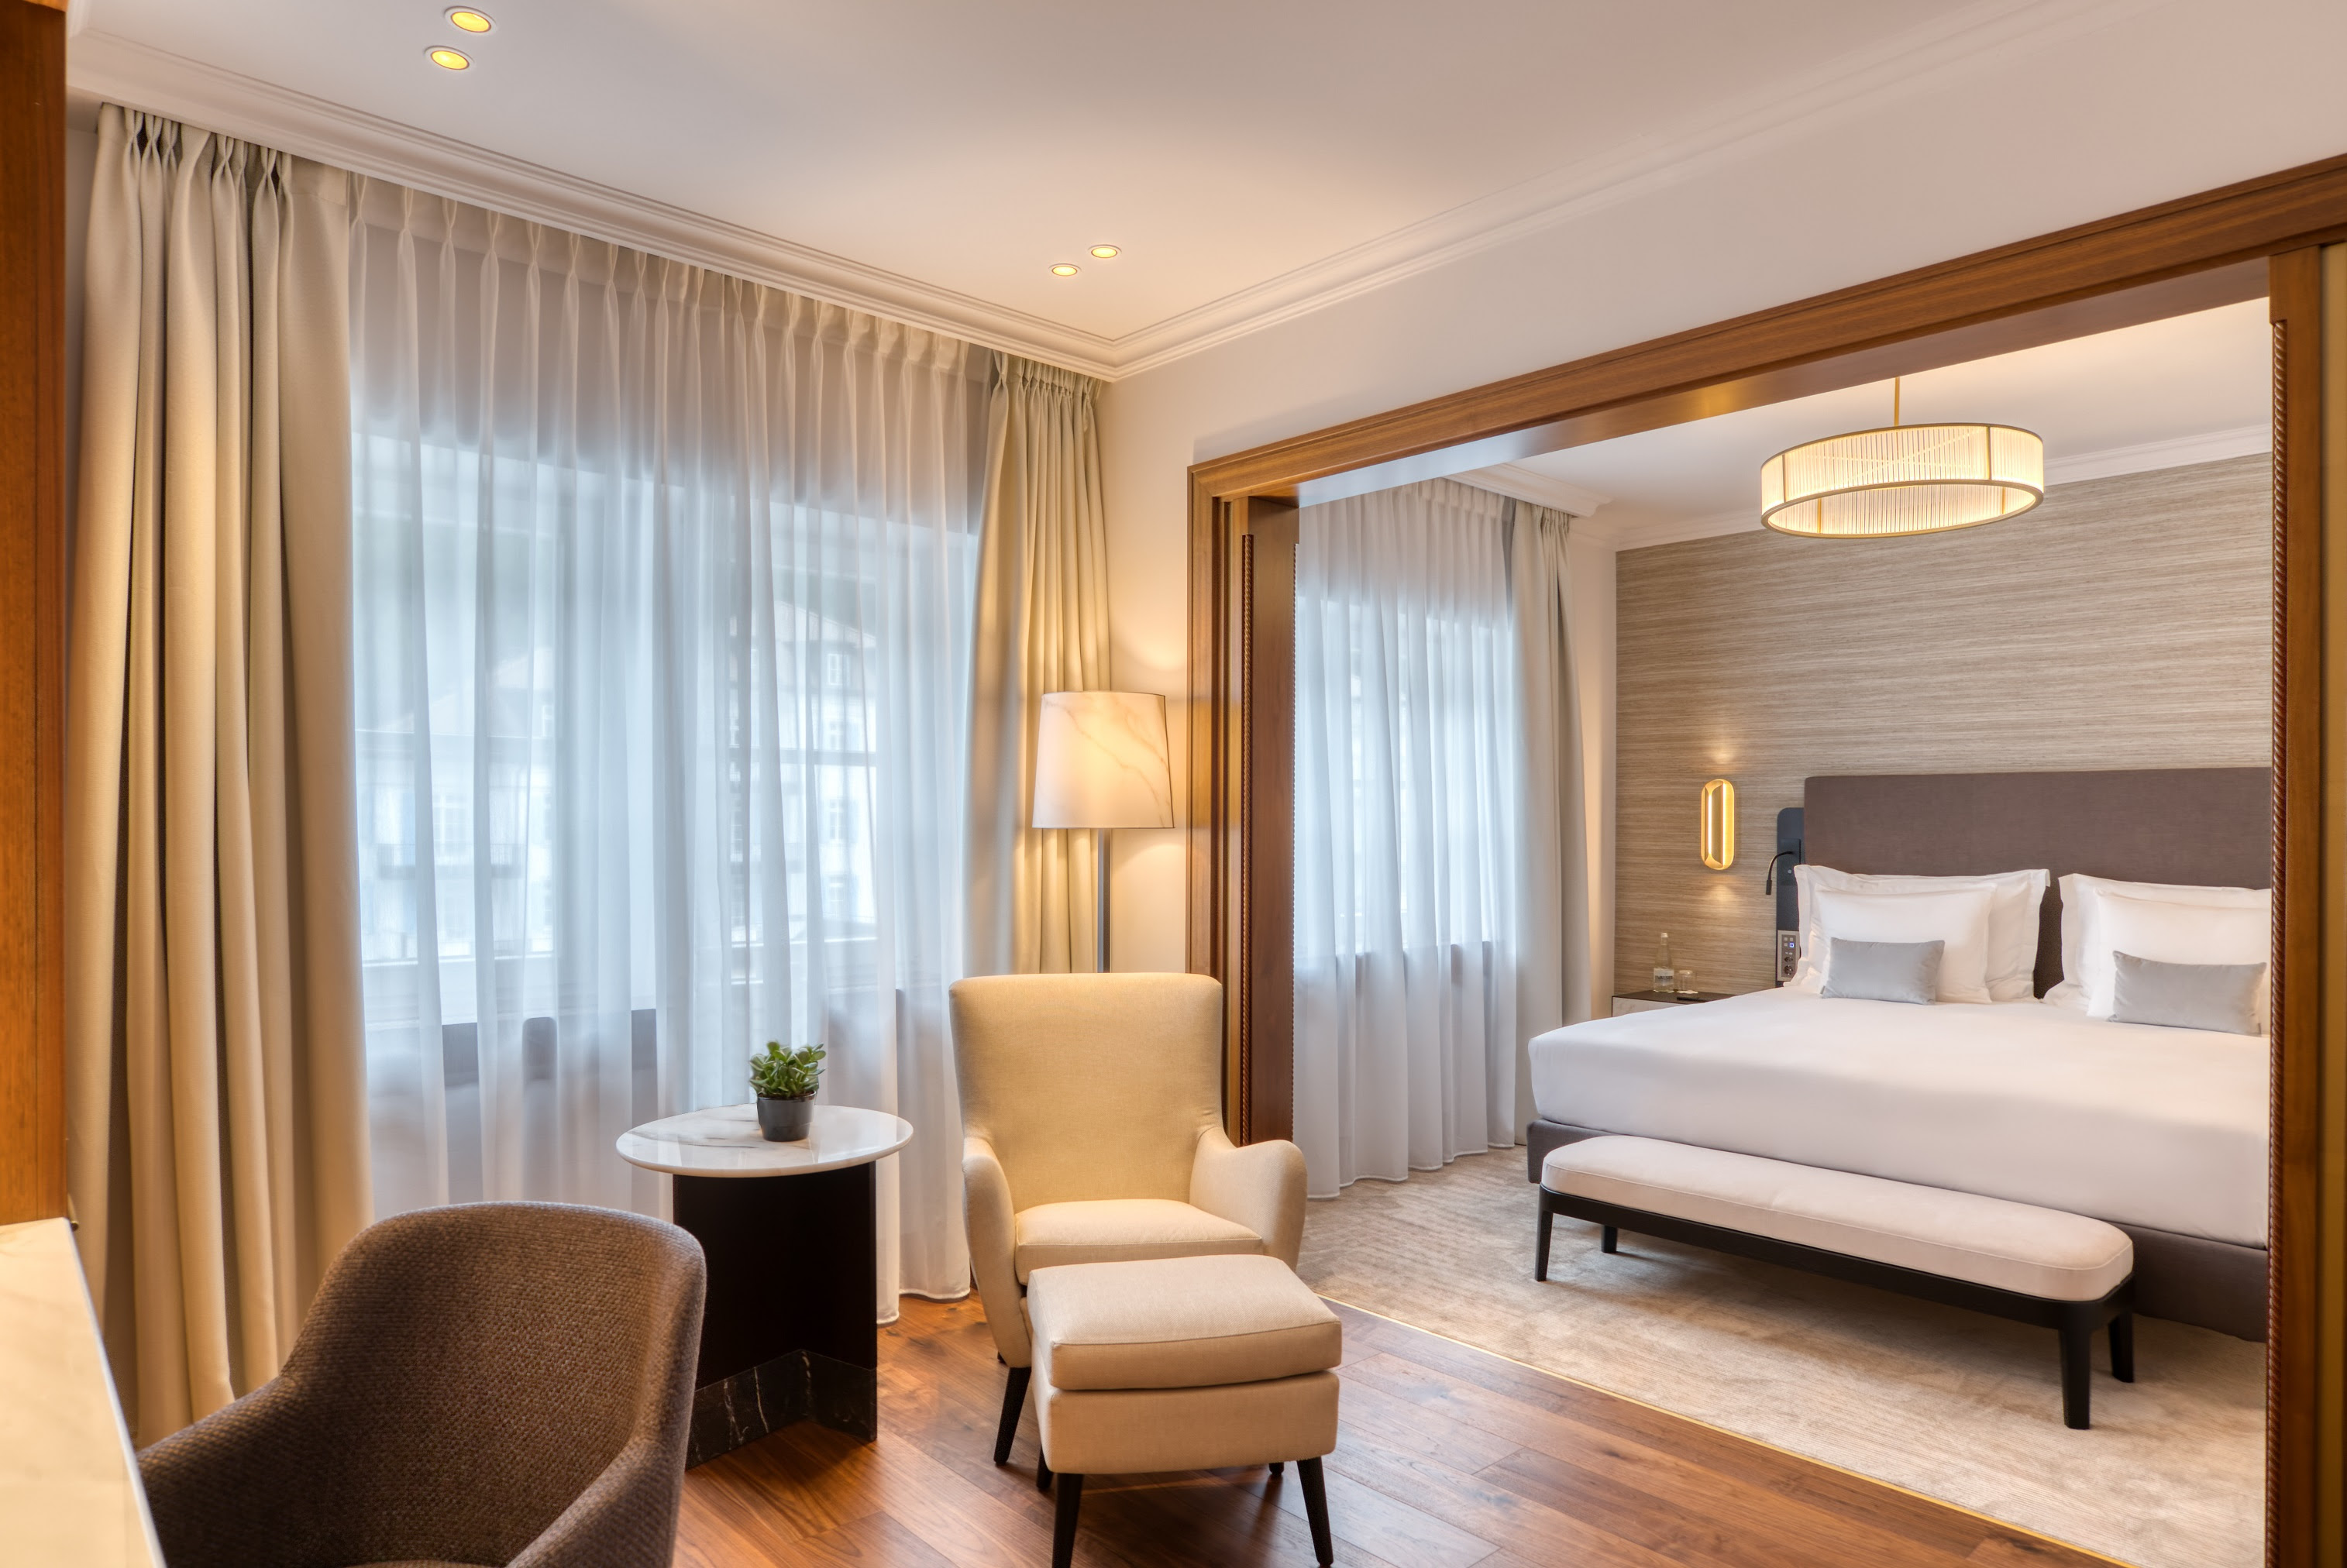 2. Grand Hotel des Bains Kempinski St. Moritz _Deluxe Room new_Livingroom _ Bedroom_copyright Kempinski Hotels.jpg